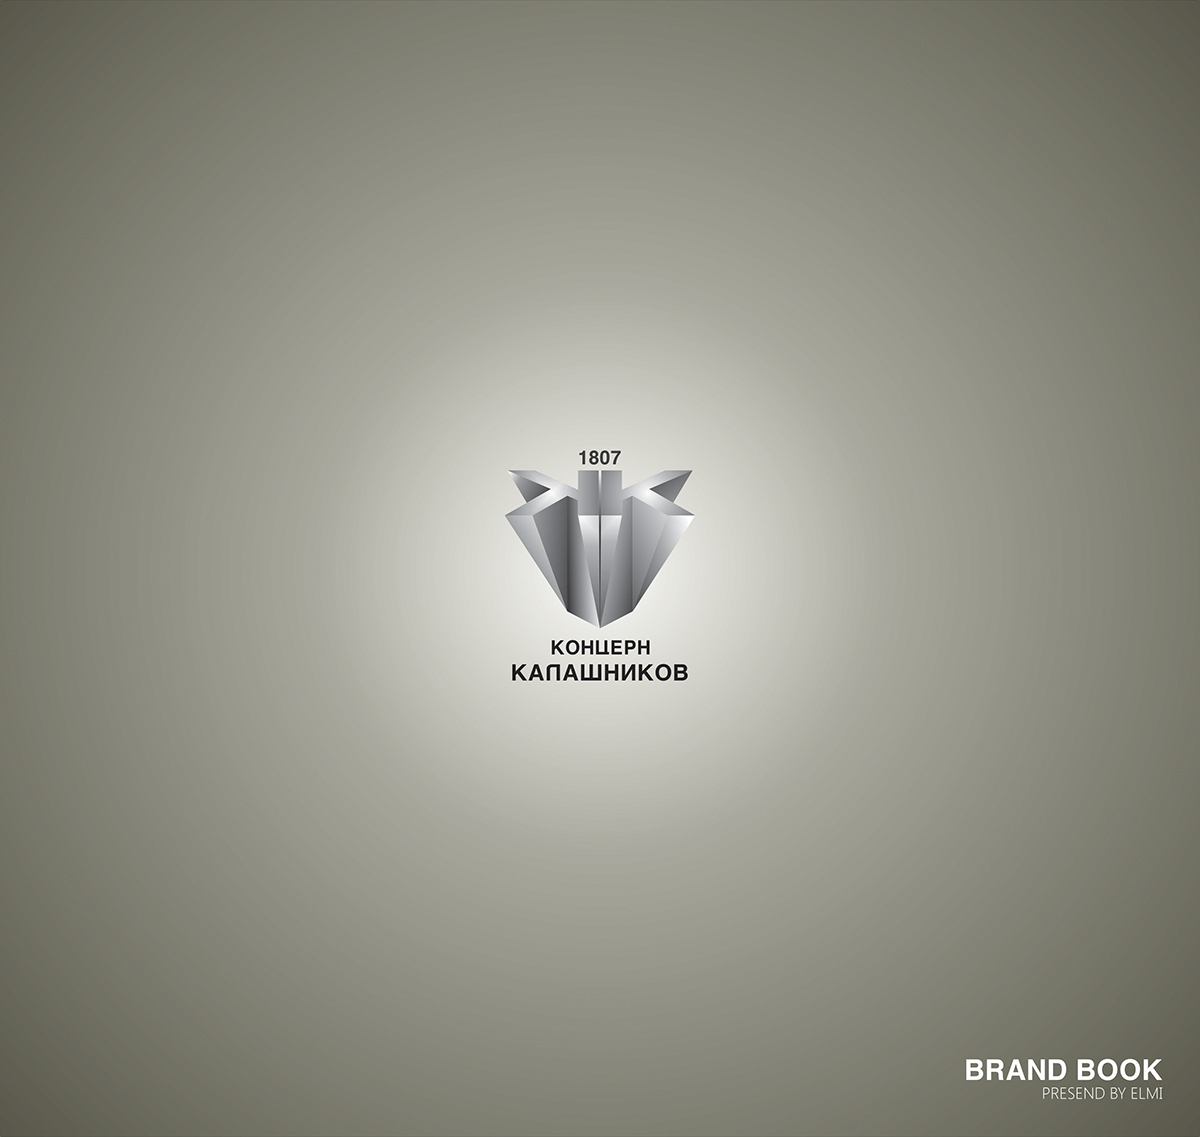 Mini brendbook logo graphic design 